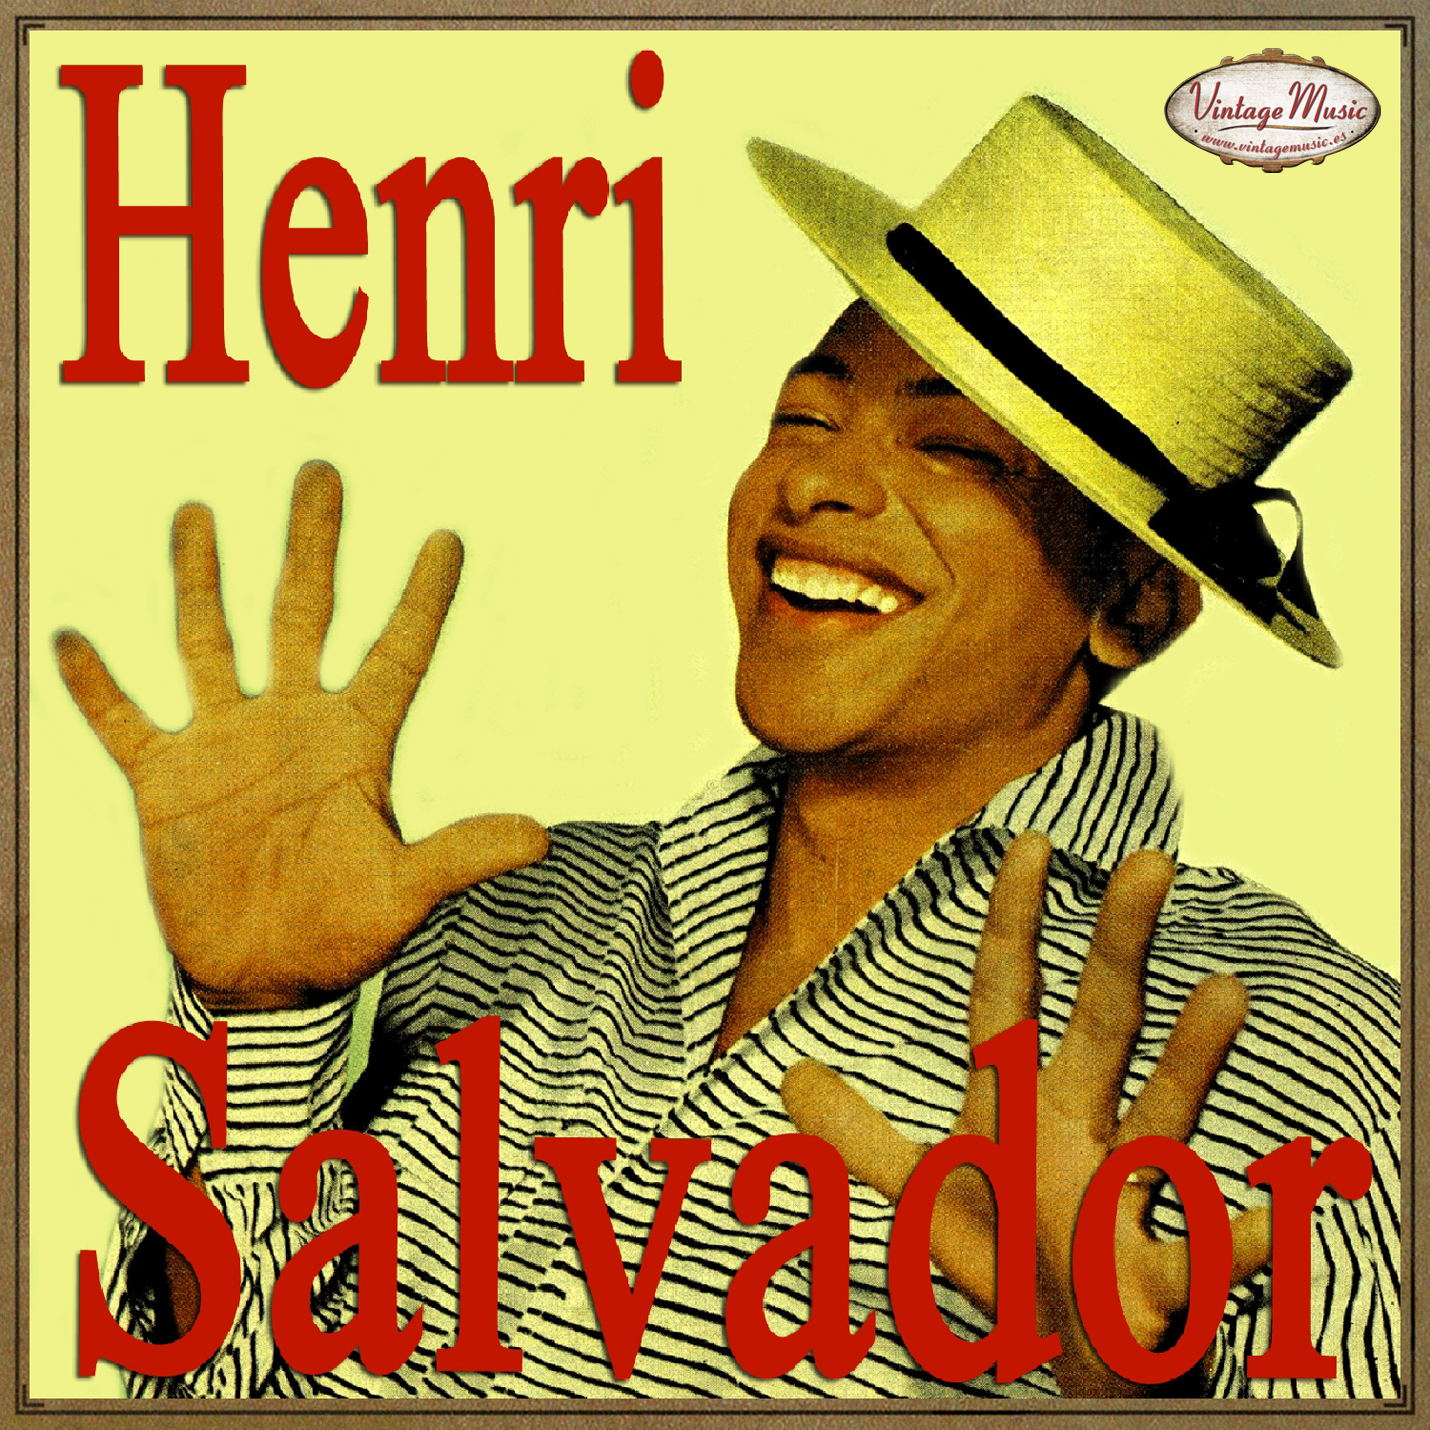 Henri Salvador (Colección Vintage Music)